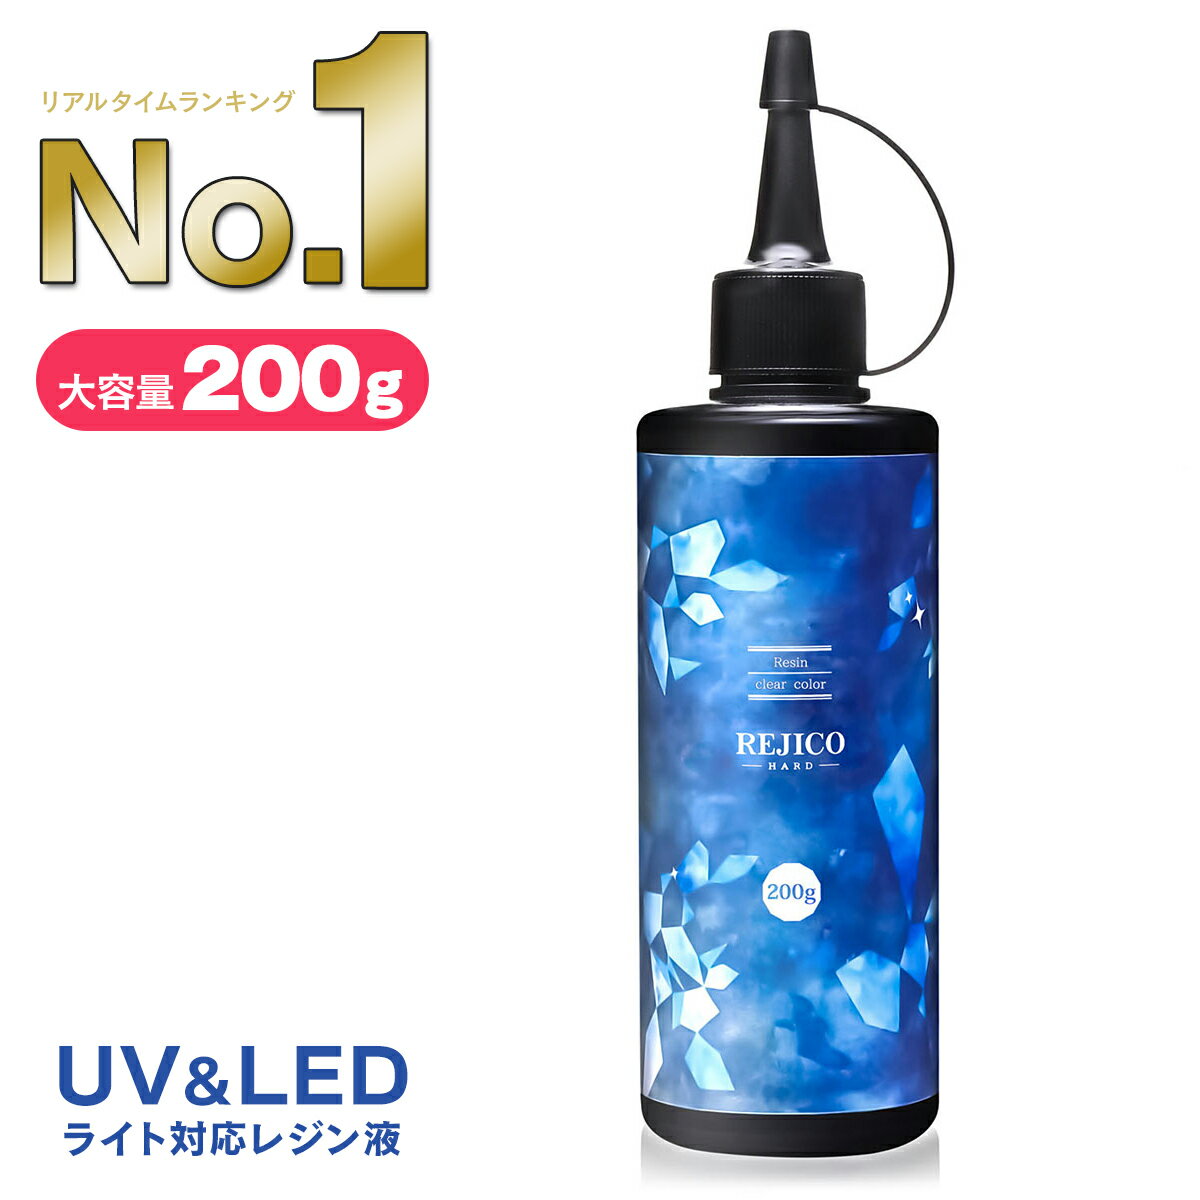 【 送料無料 】レジン液 大容量 200g UV-LED対応 ハードタイプ 日本製 REJICO レジコ